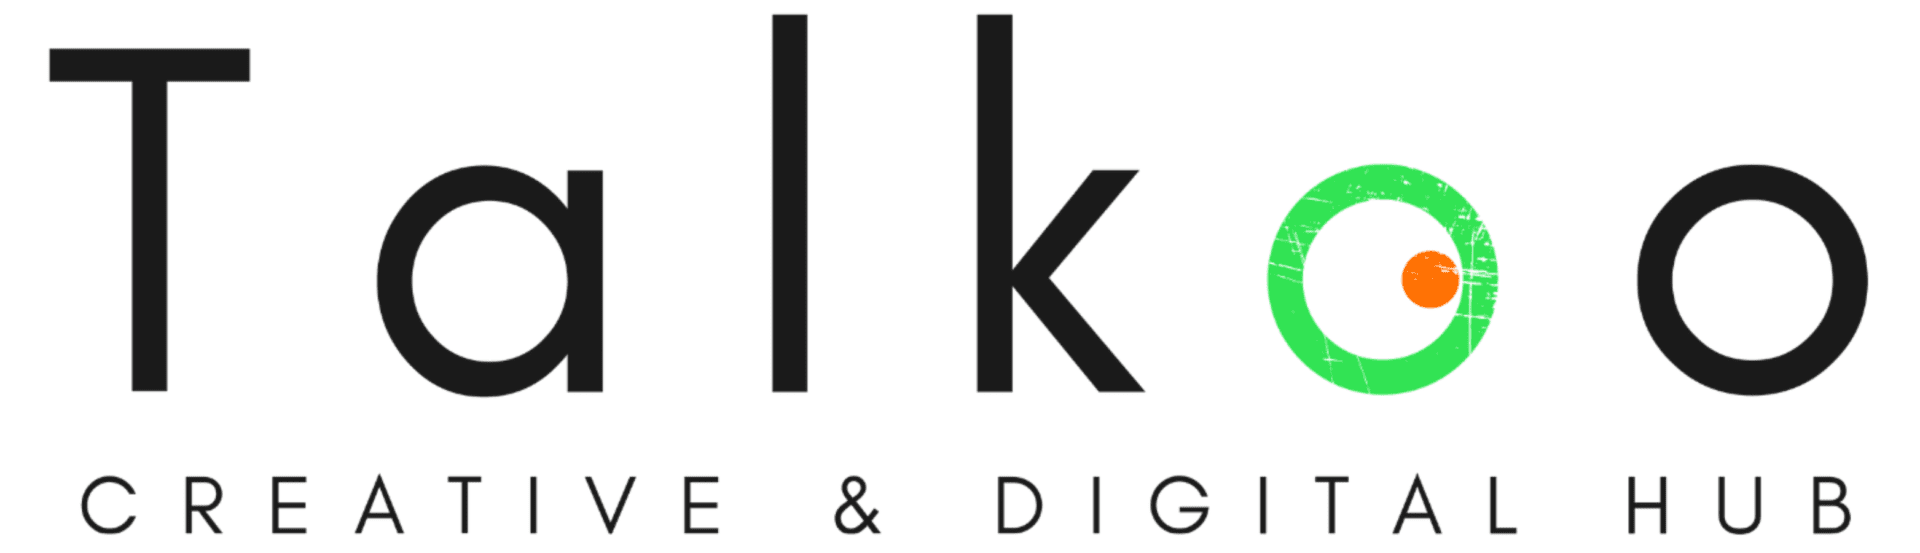 Talkoo-creative-digital-hub